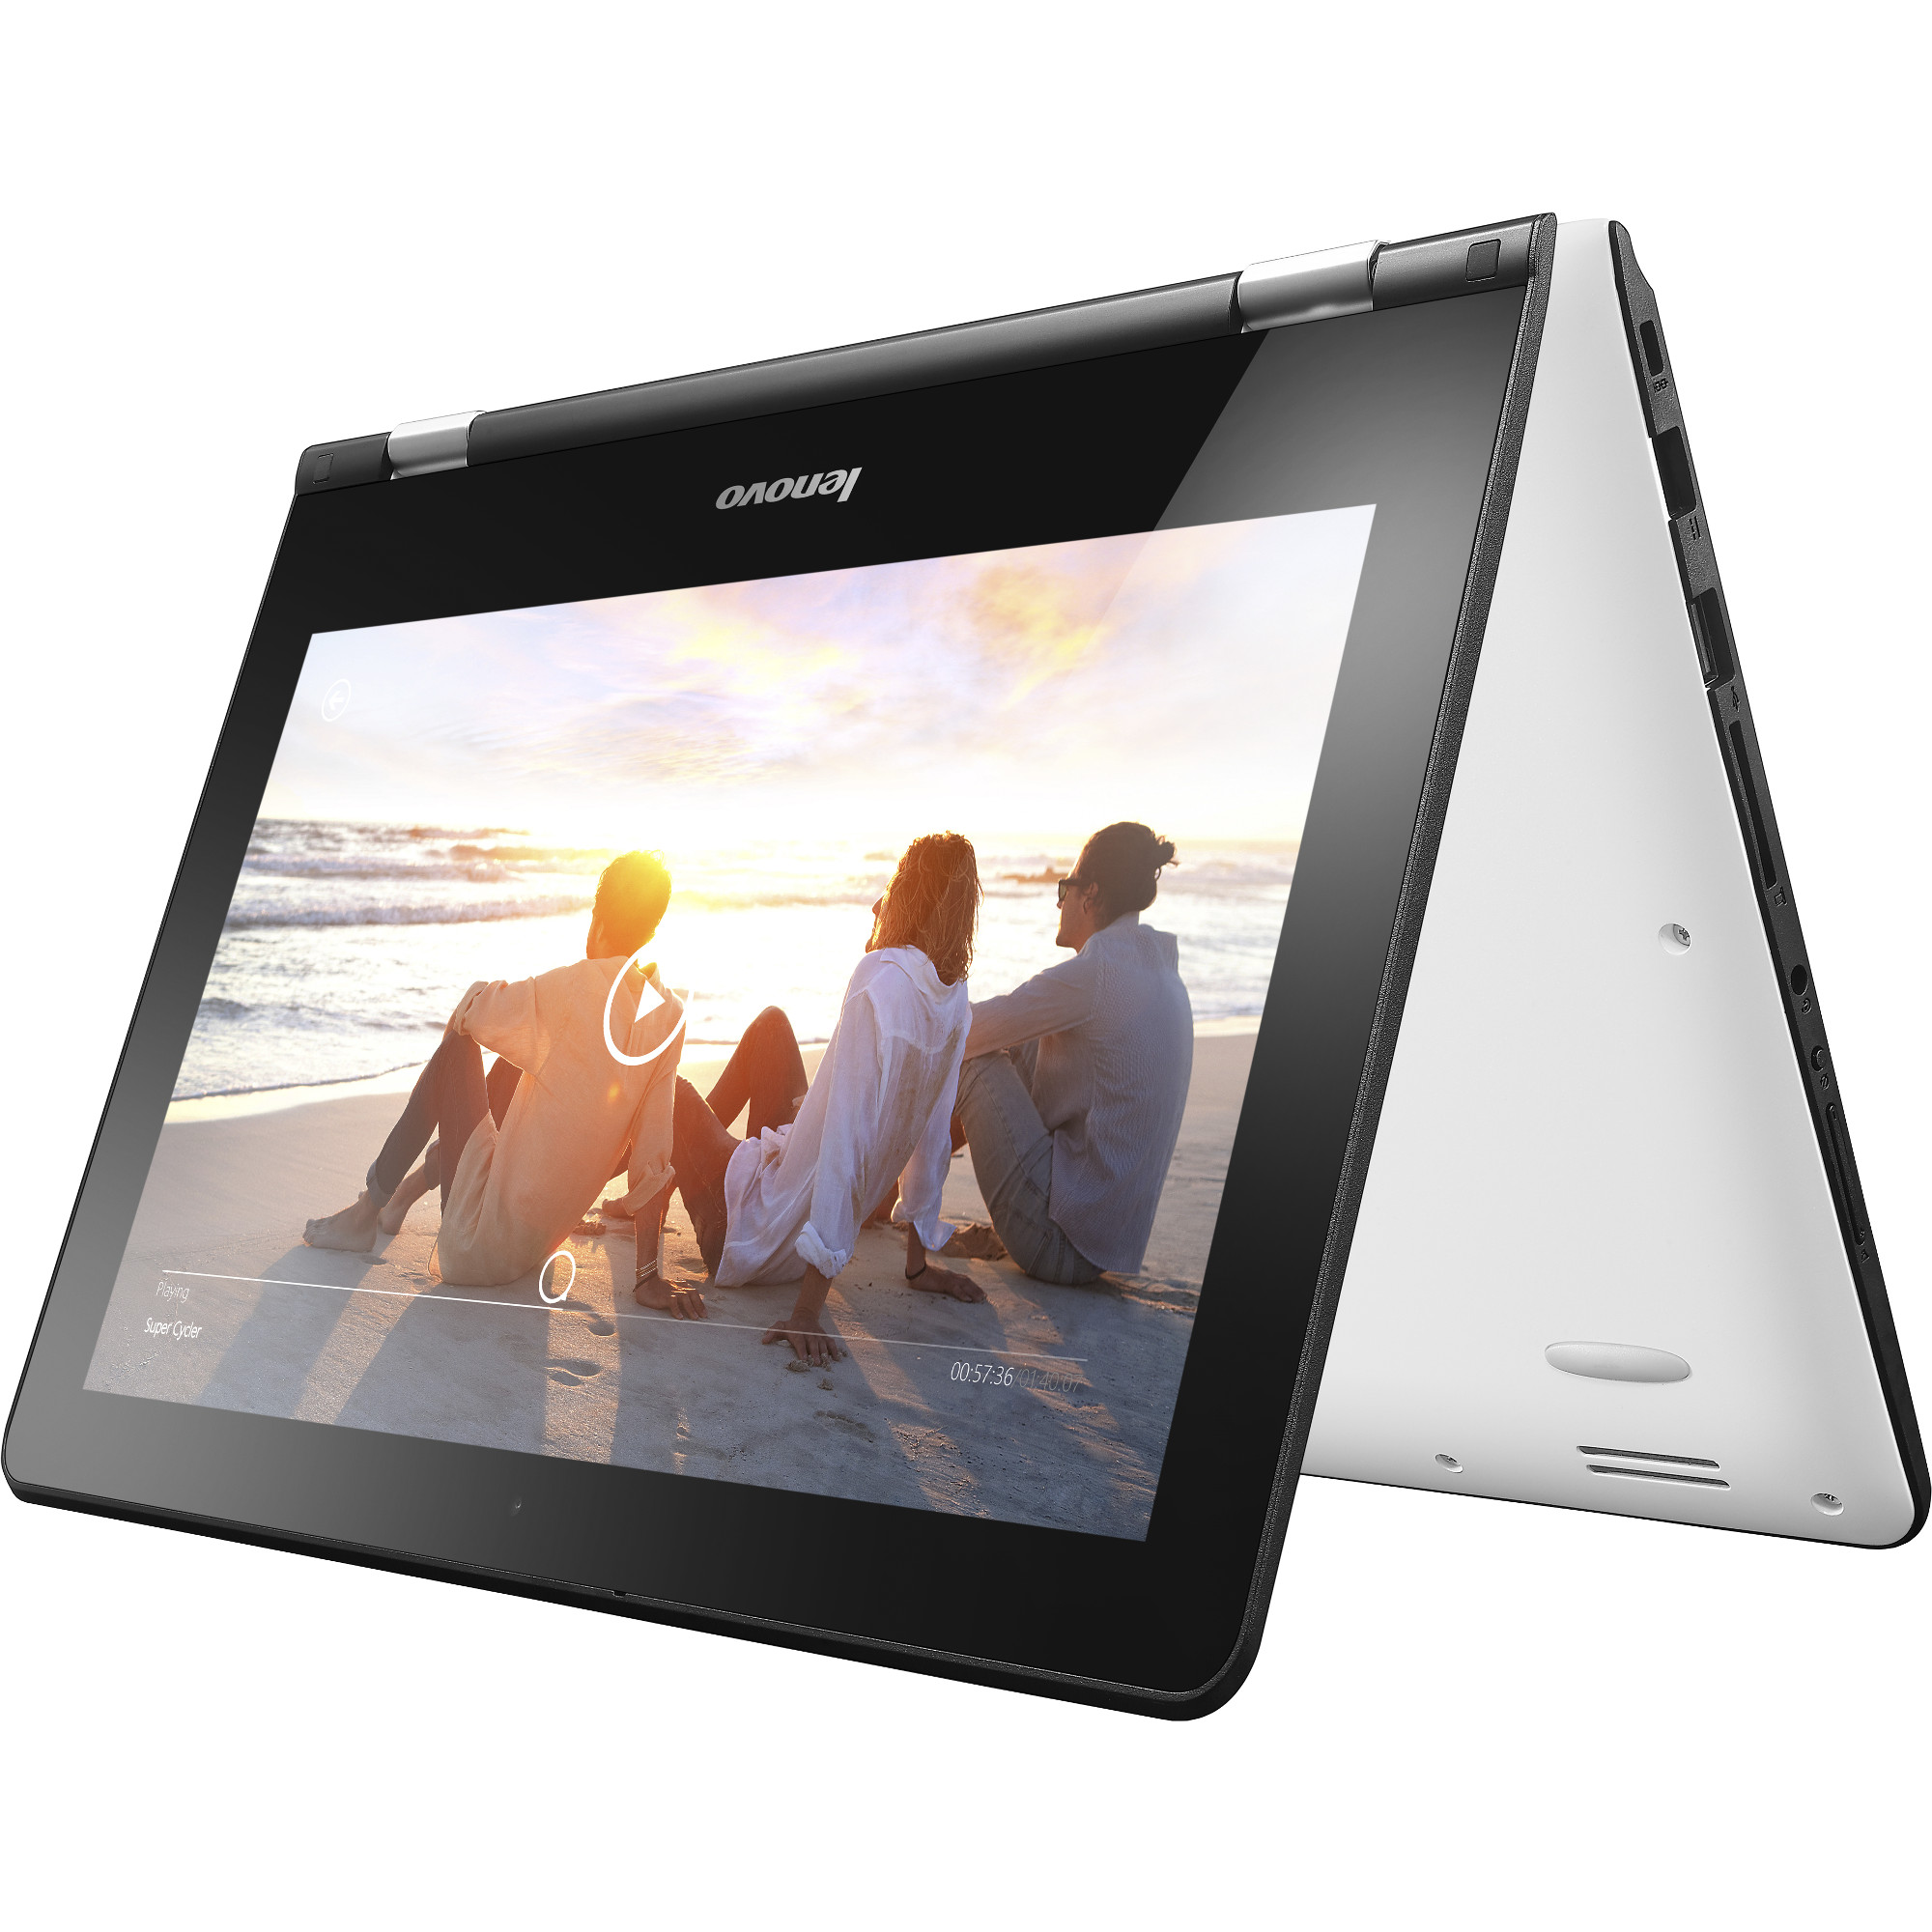 Laptop 2 in 1 Lenovo YOGA 300-11IBR, Intel® Celeron® N3060, 4GB DDR3, HDD 500GB, Intel® HD Graphics, Windows 10 Home